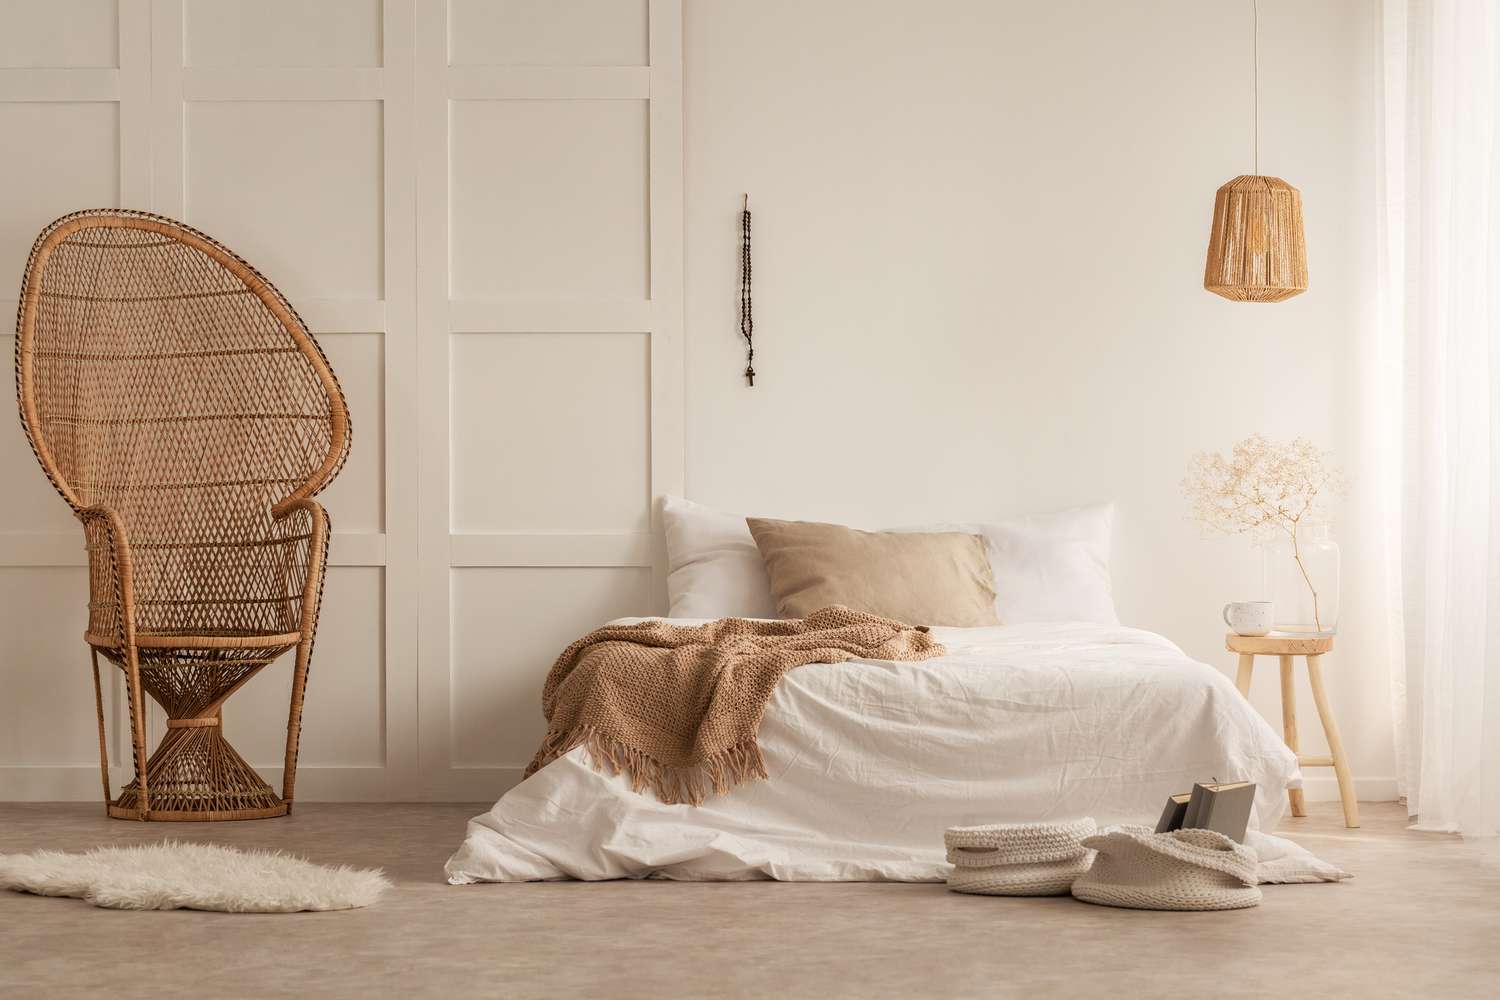 Elegante silla pavo real en elegante dormitorio creado con materiales naturales de color tierra